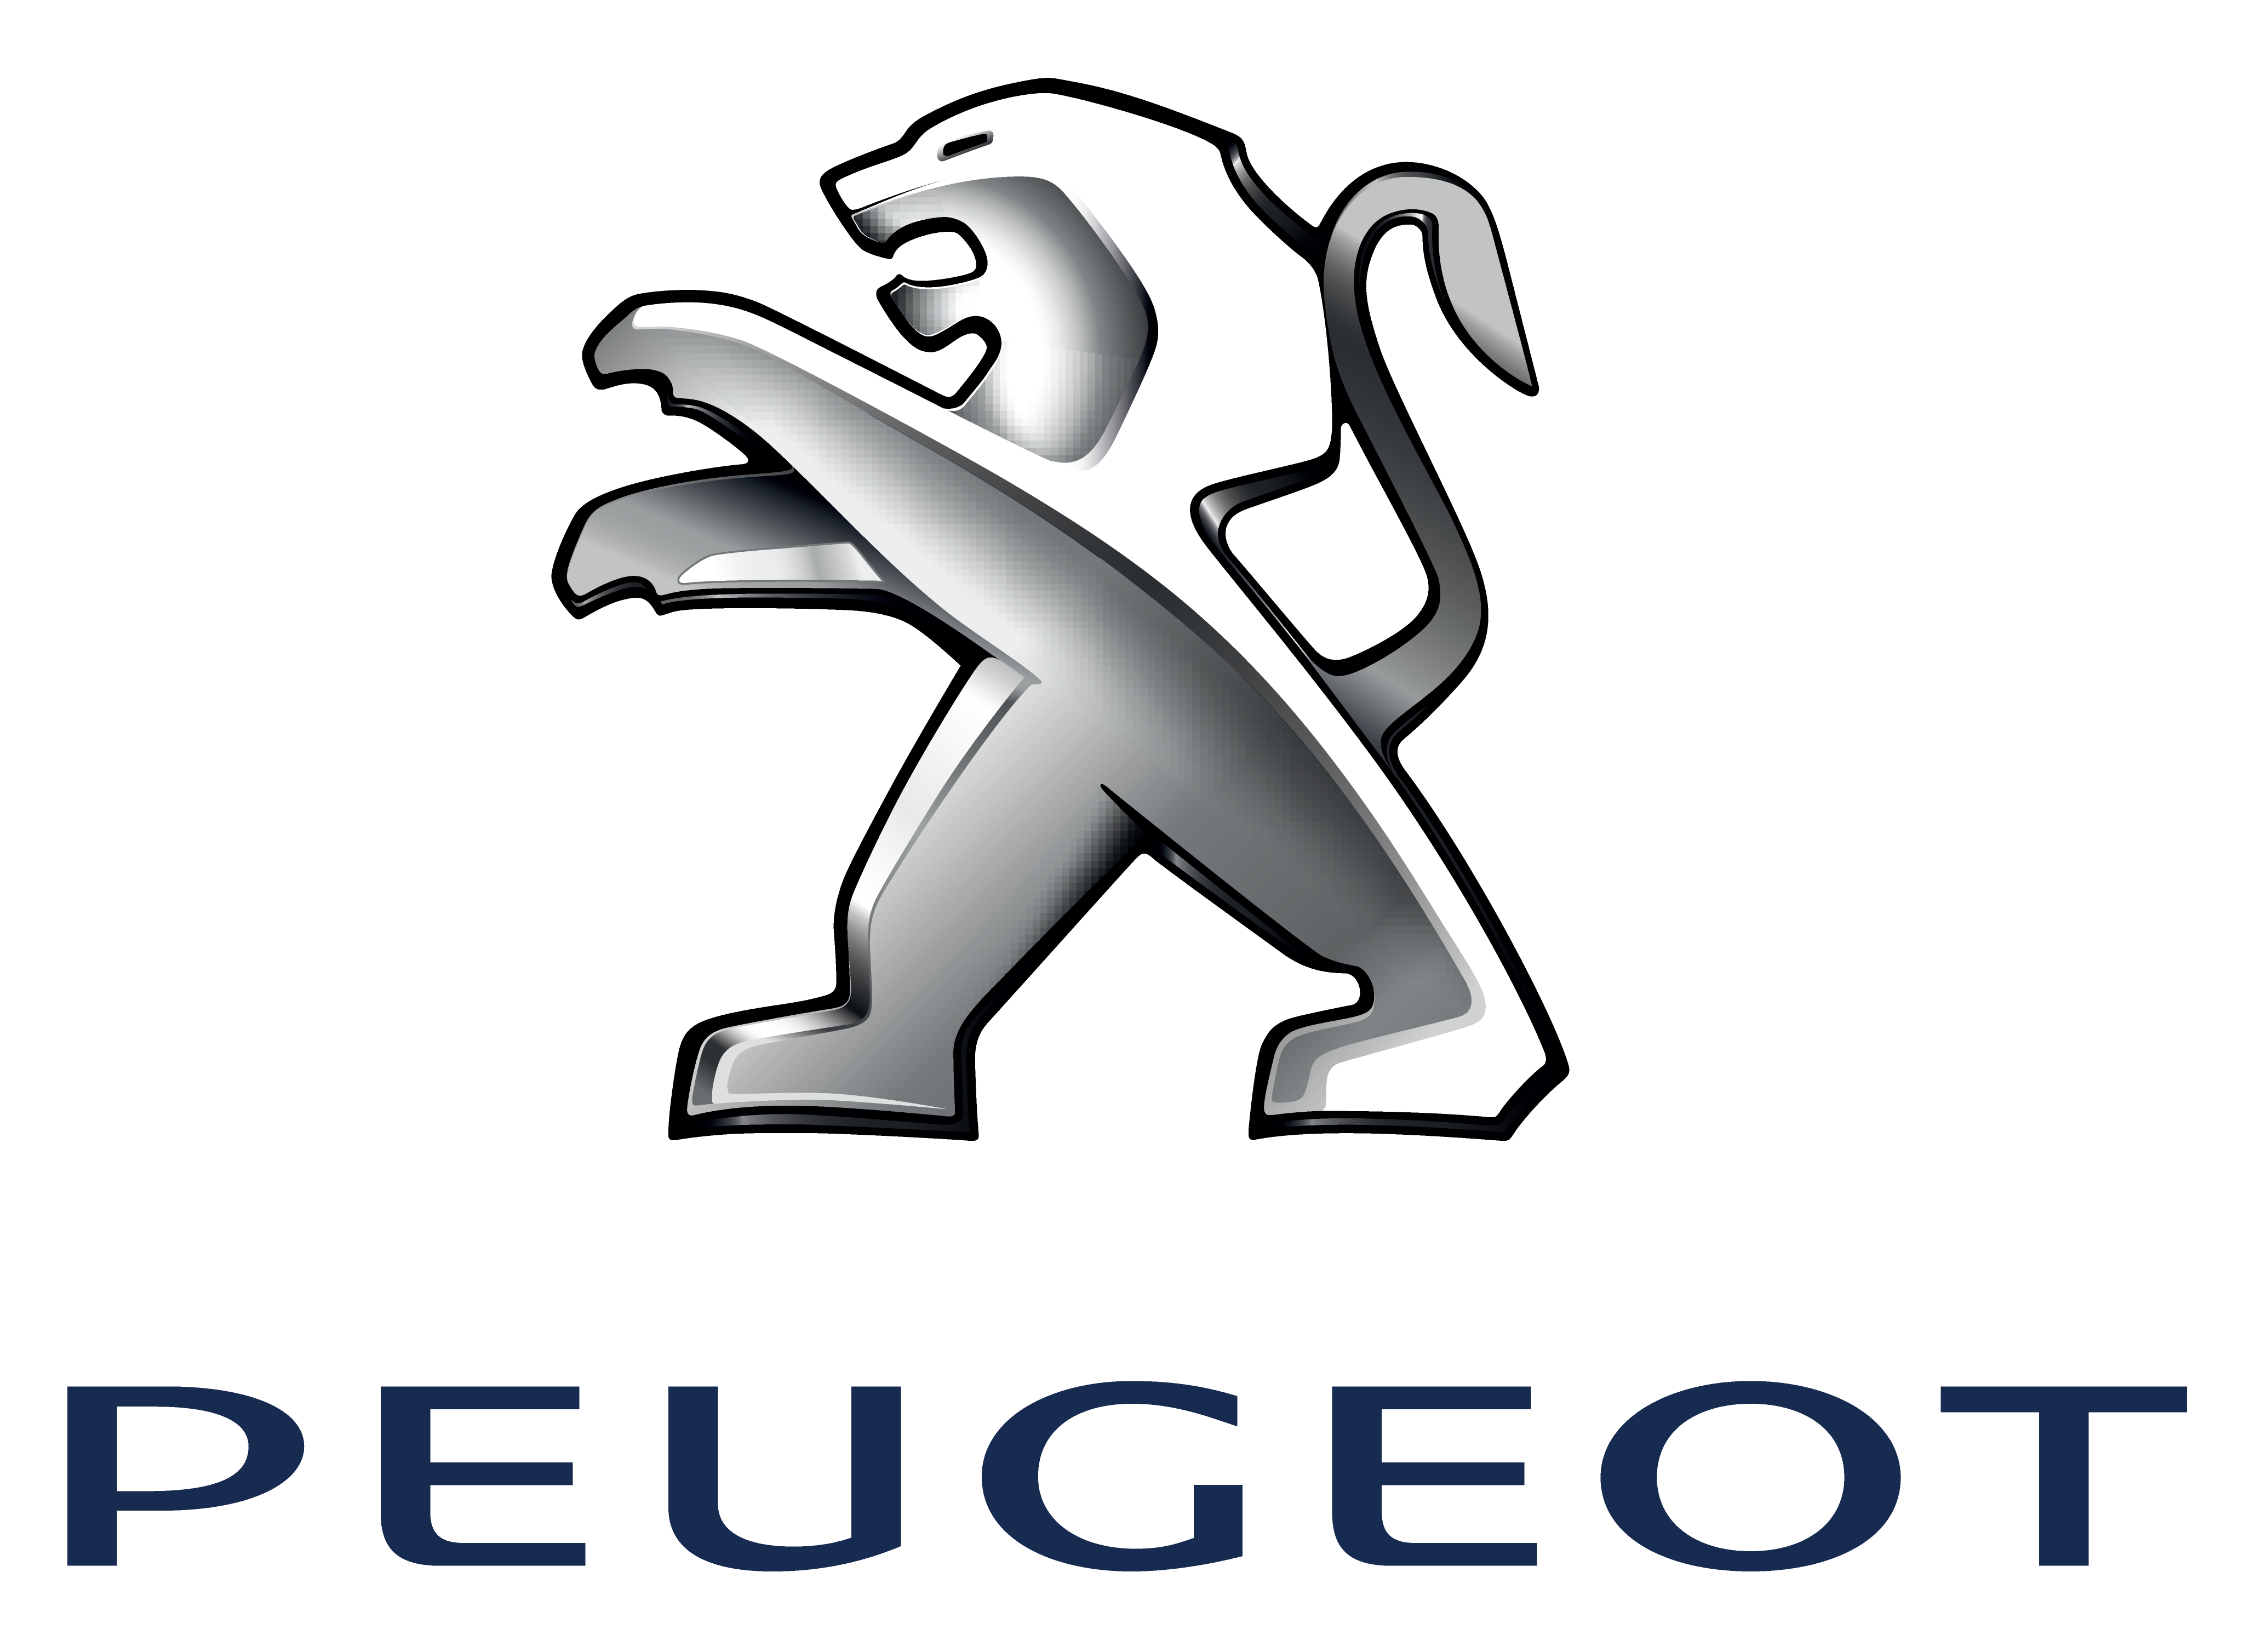 Peugeot Logo Vectors Free Dow